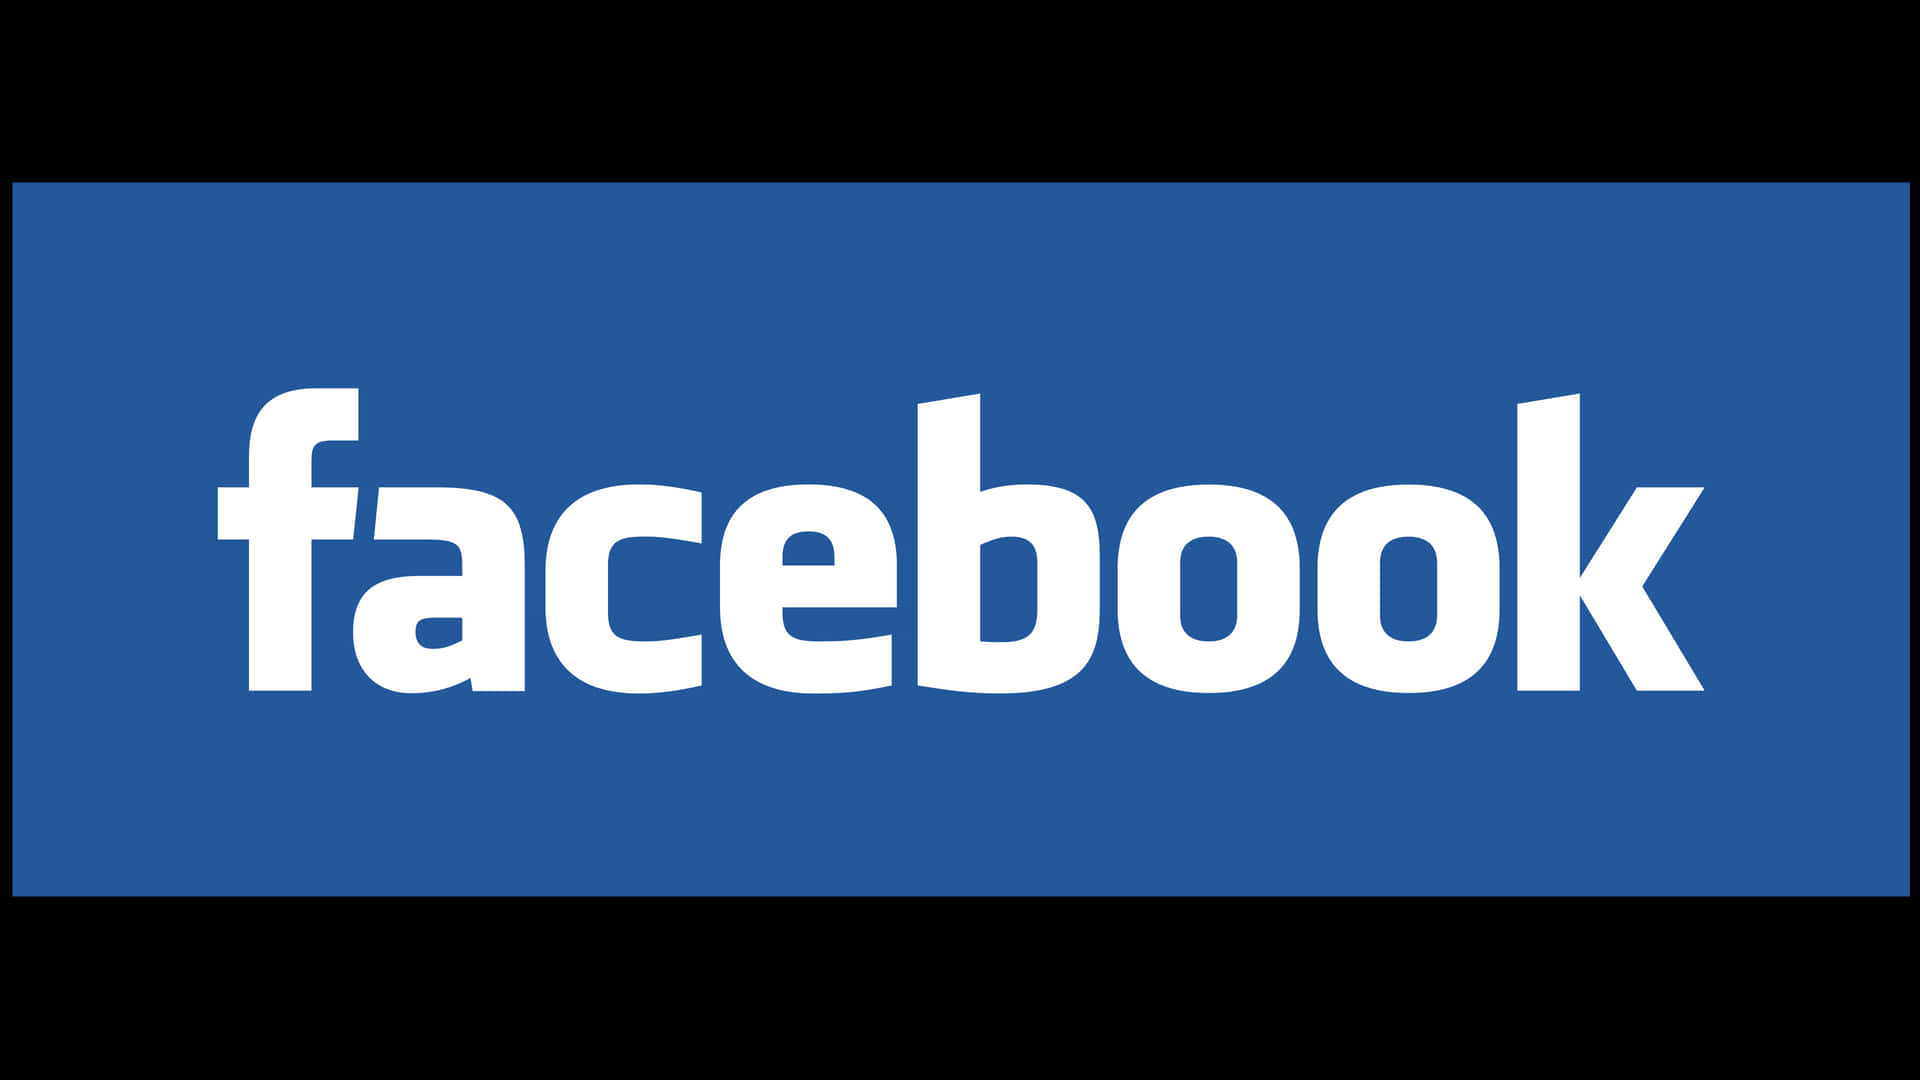 Logotipode Facebook Con Letras Blancas Sobre Un Fondo Azul